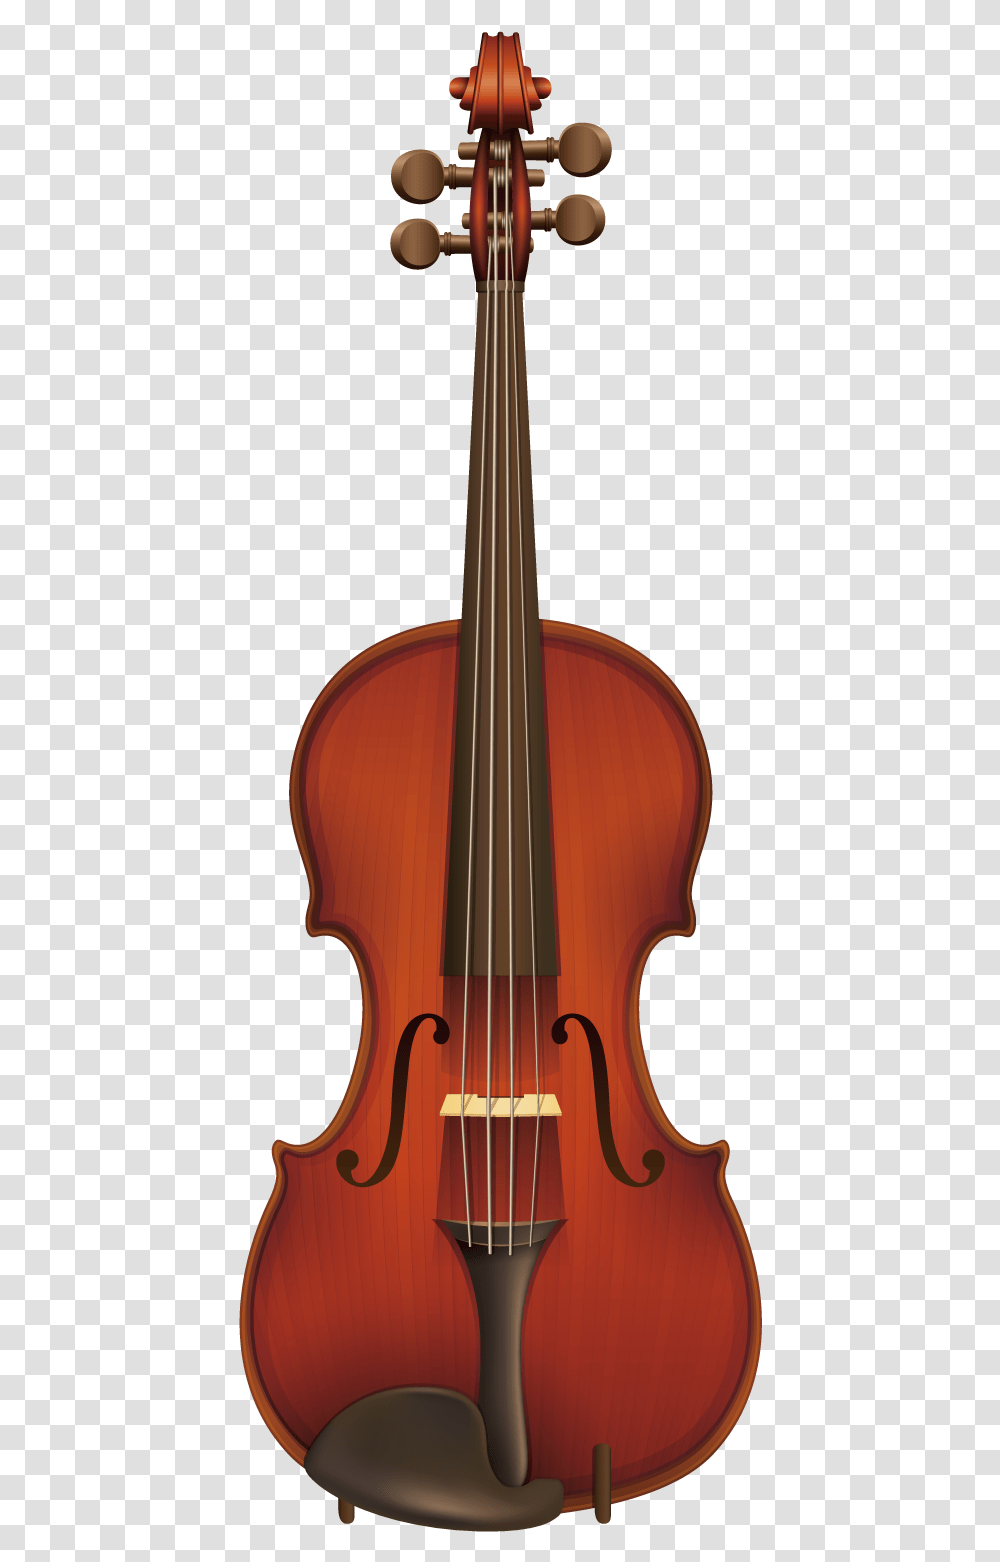 Ukulele Musical Instrument Violin Viola Violon 4, Leisure Activities, Fiddle, Cello, Guitar Transparent Png